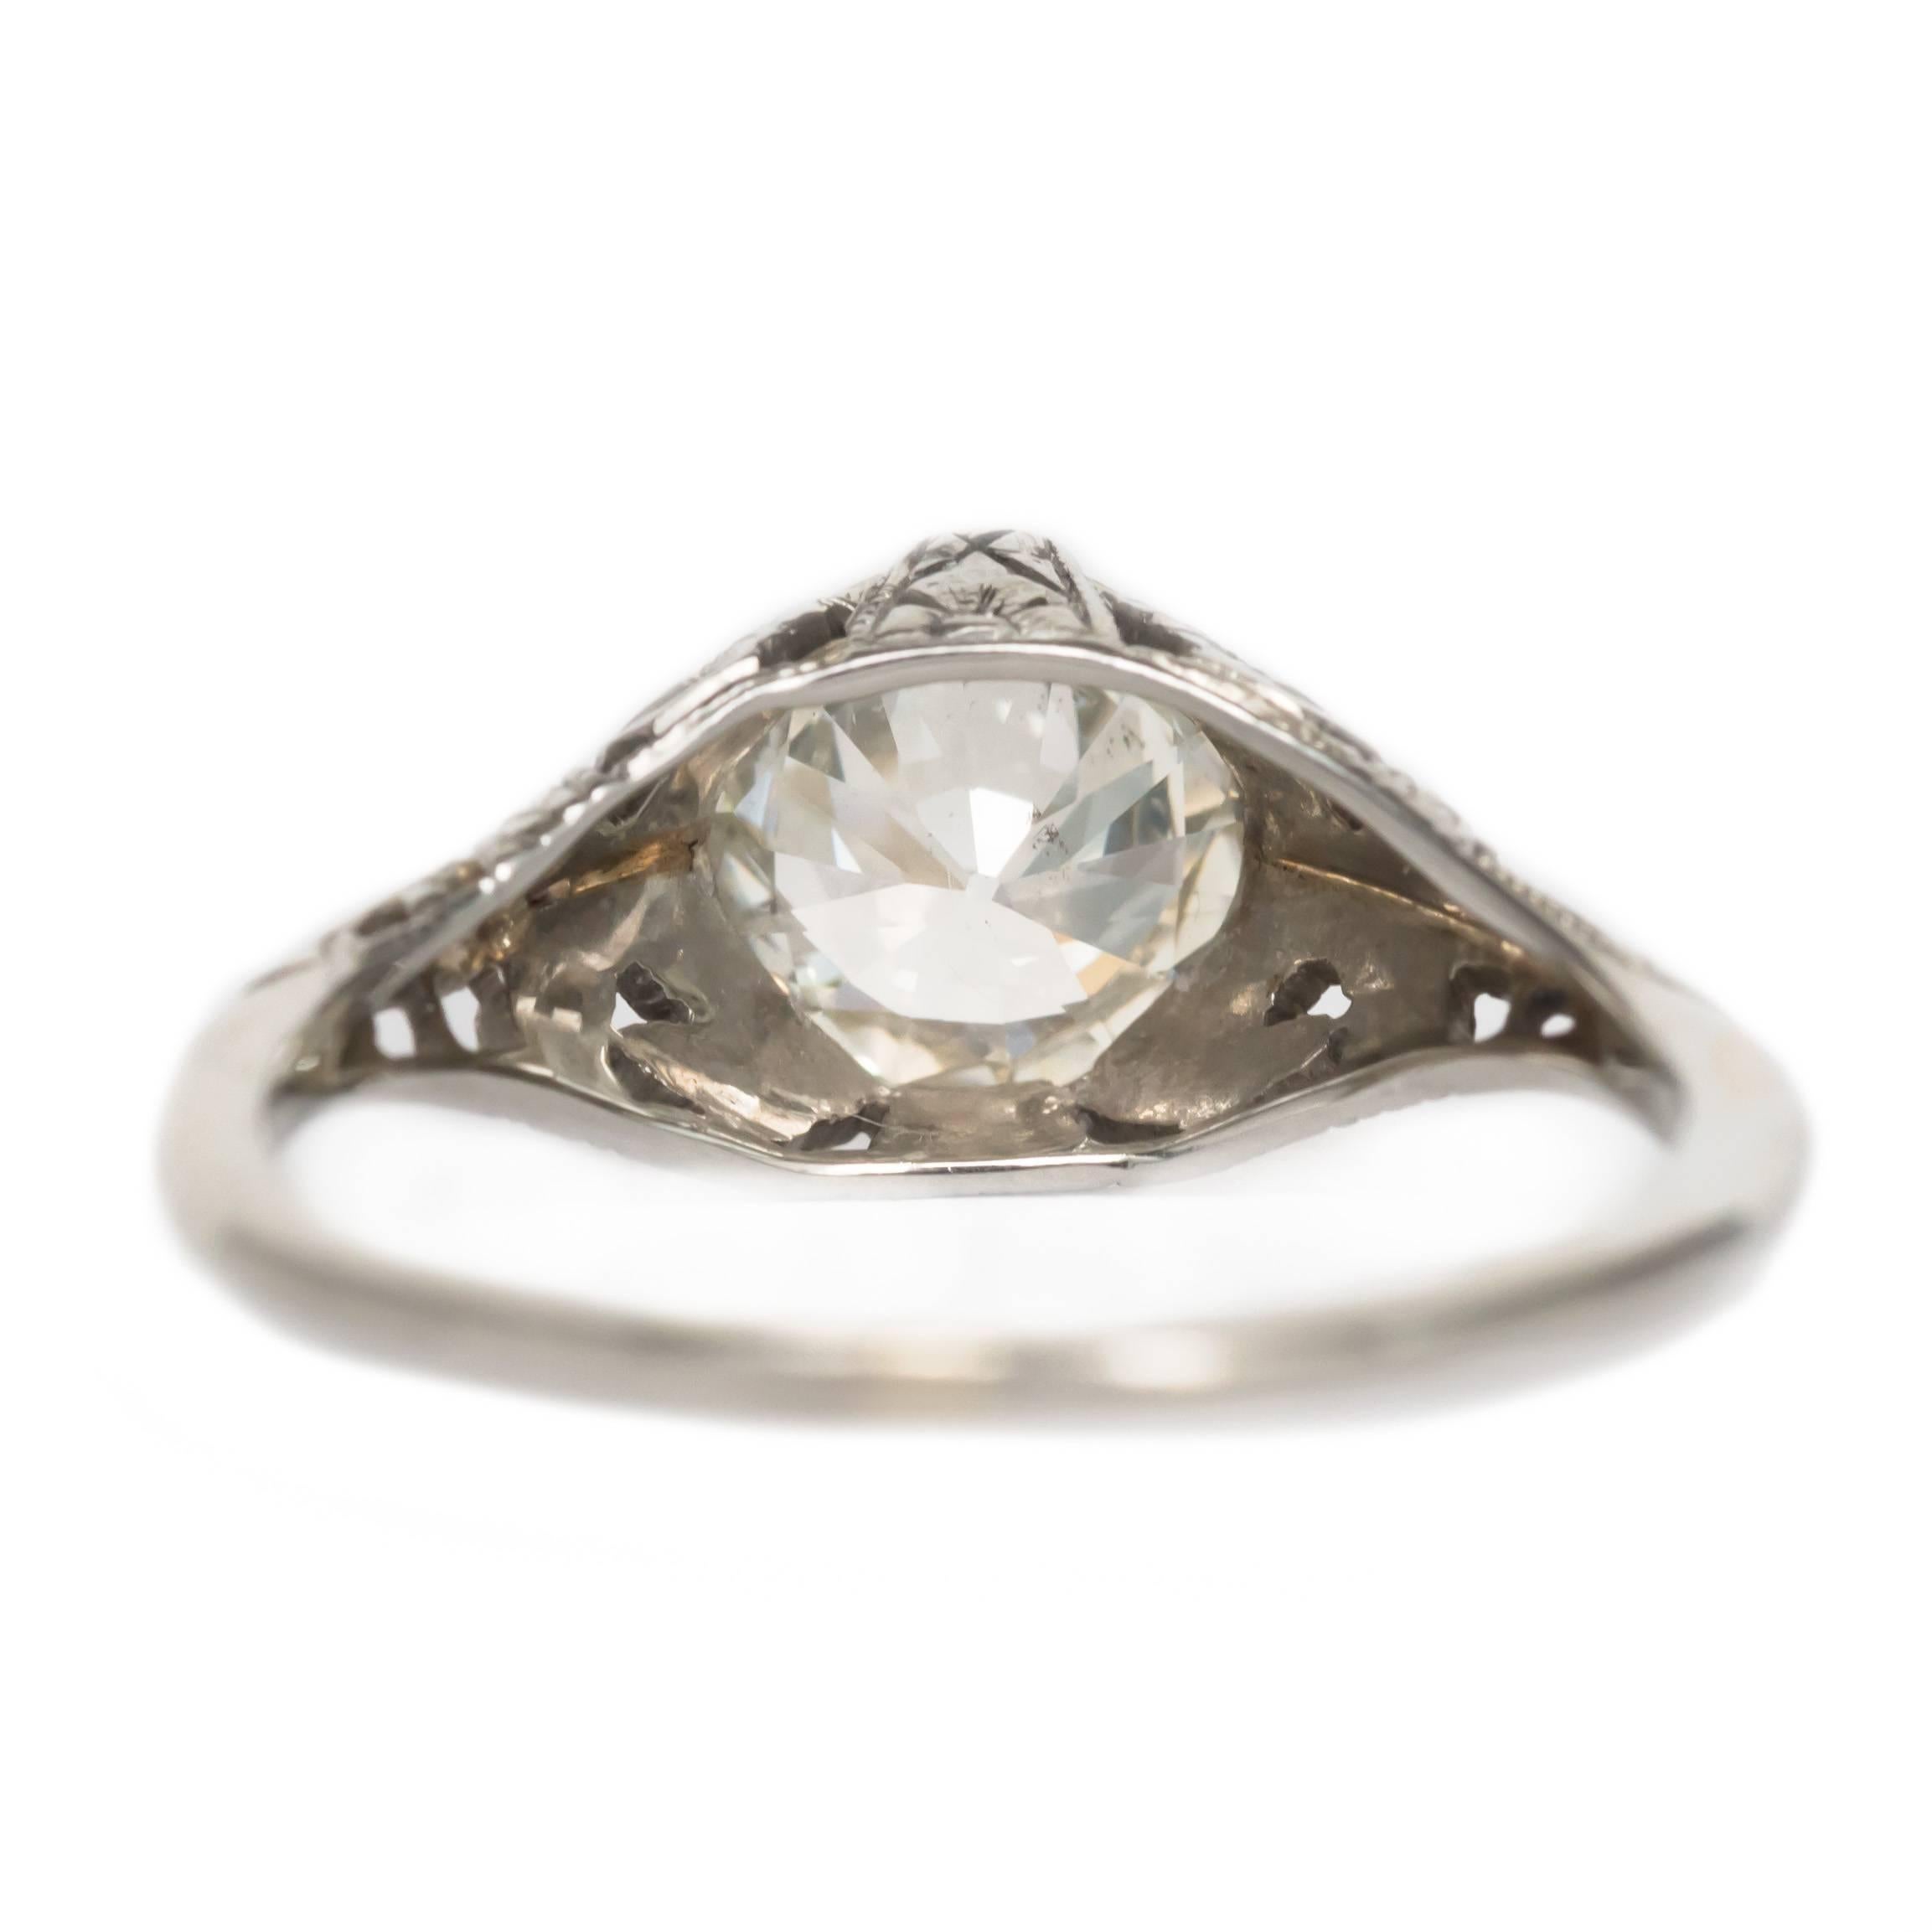 Edwardian GIA Certified 1.06 Carat 18 Karat White Gold Diamond Engagement Ring